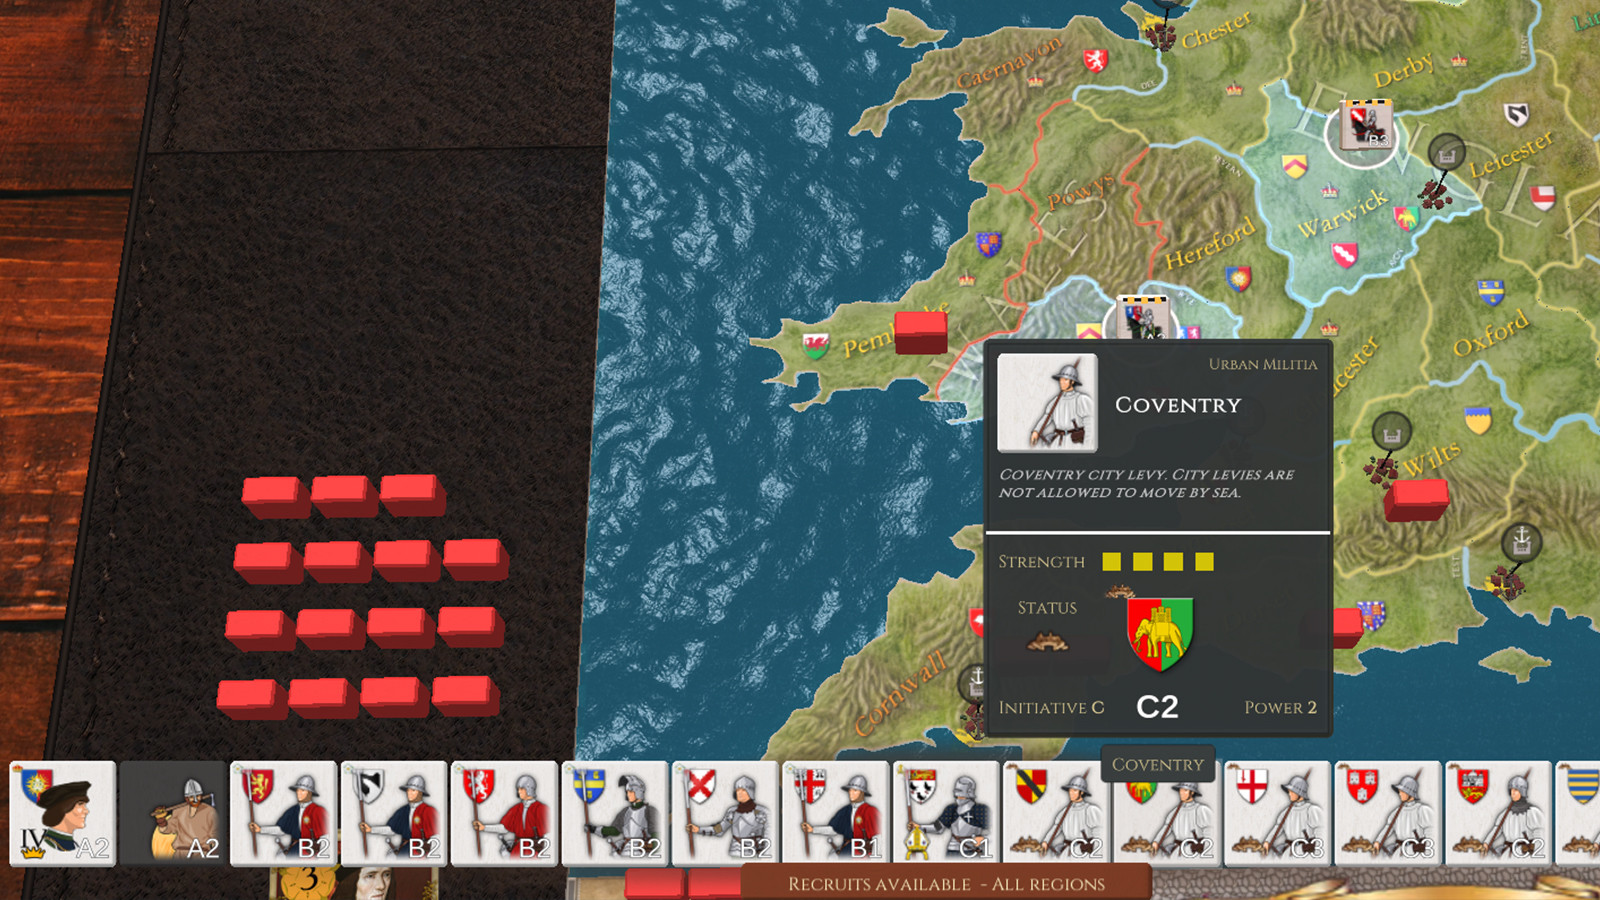 Blocks!: Richard III screenshot